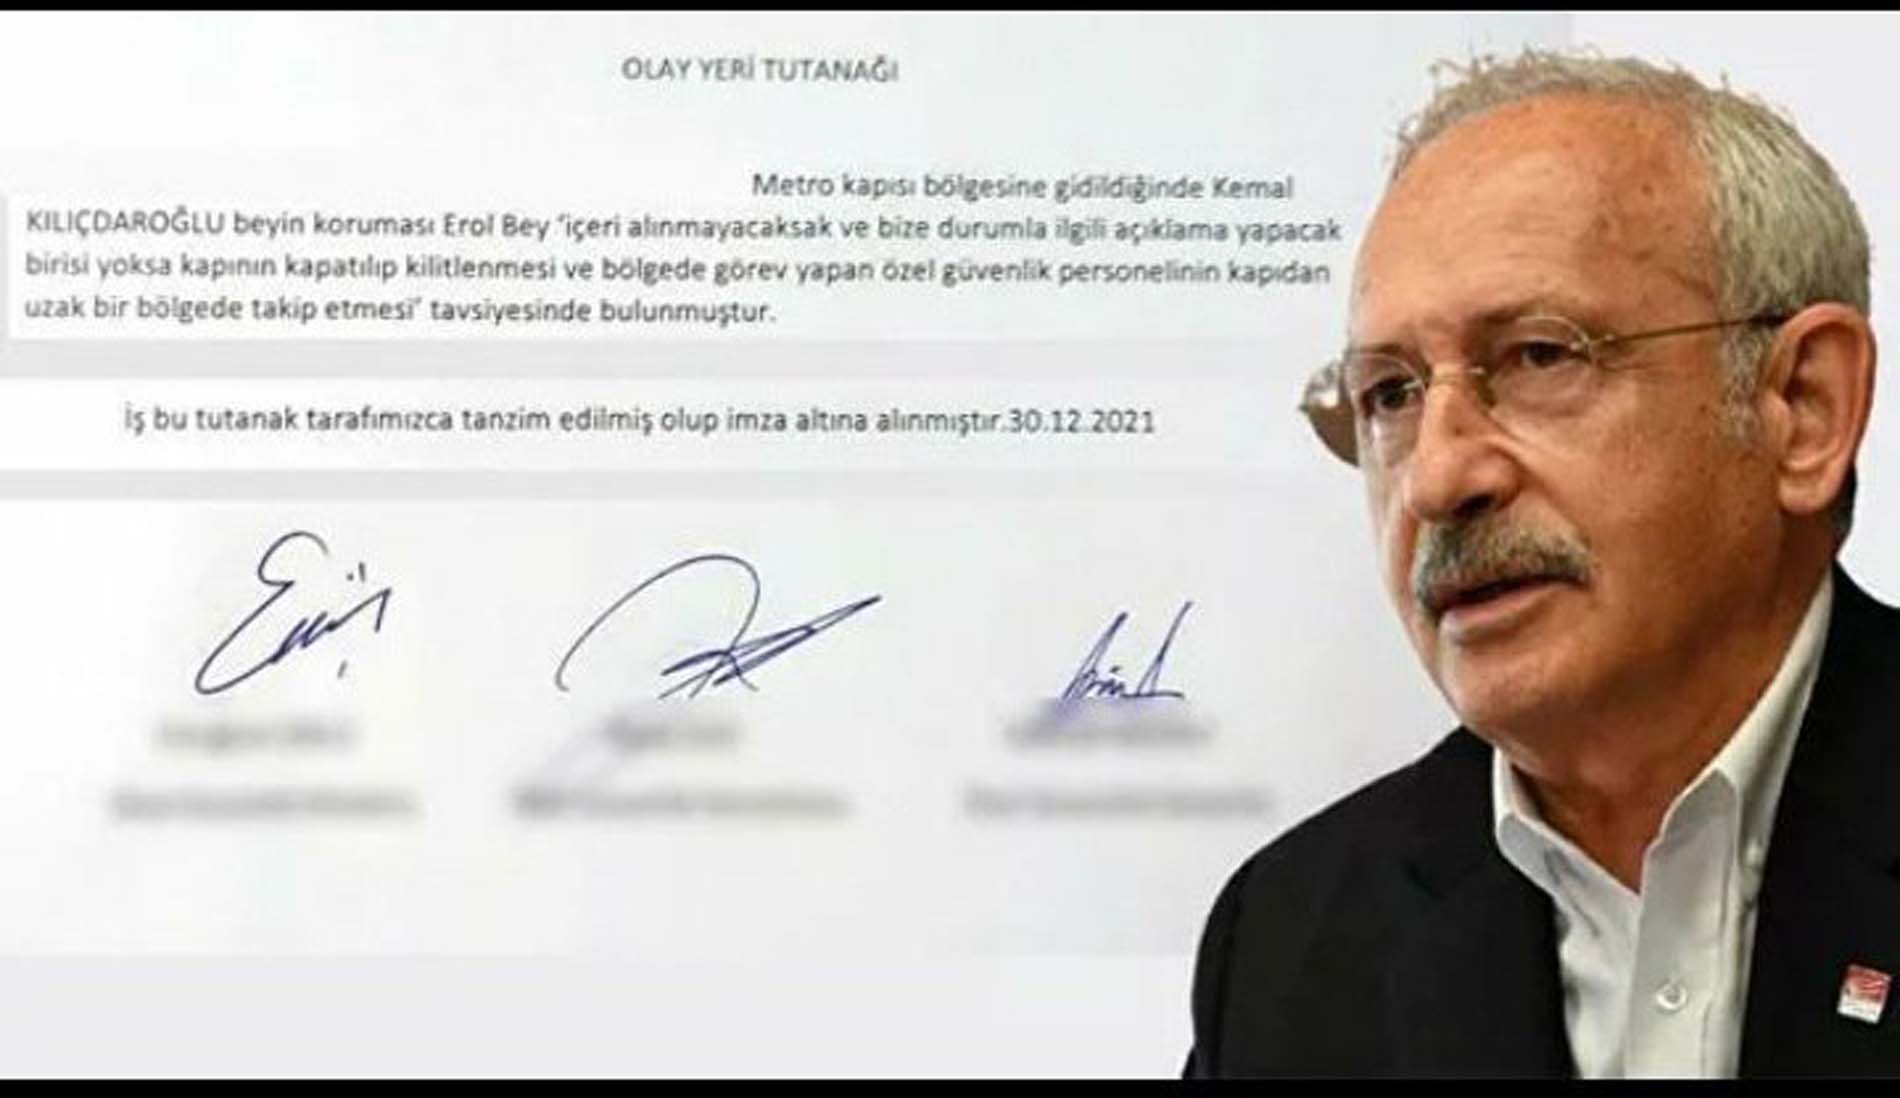 Abdulkadir Selvi, Kılıçdaroğlu'nun belge isteğini geri çevirmeyerek, MEB kapısına kilit vuran ismi ispatlarıyla birlikte ortaya koydu!